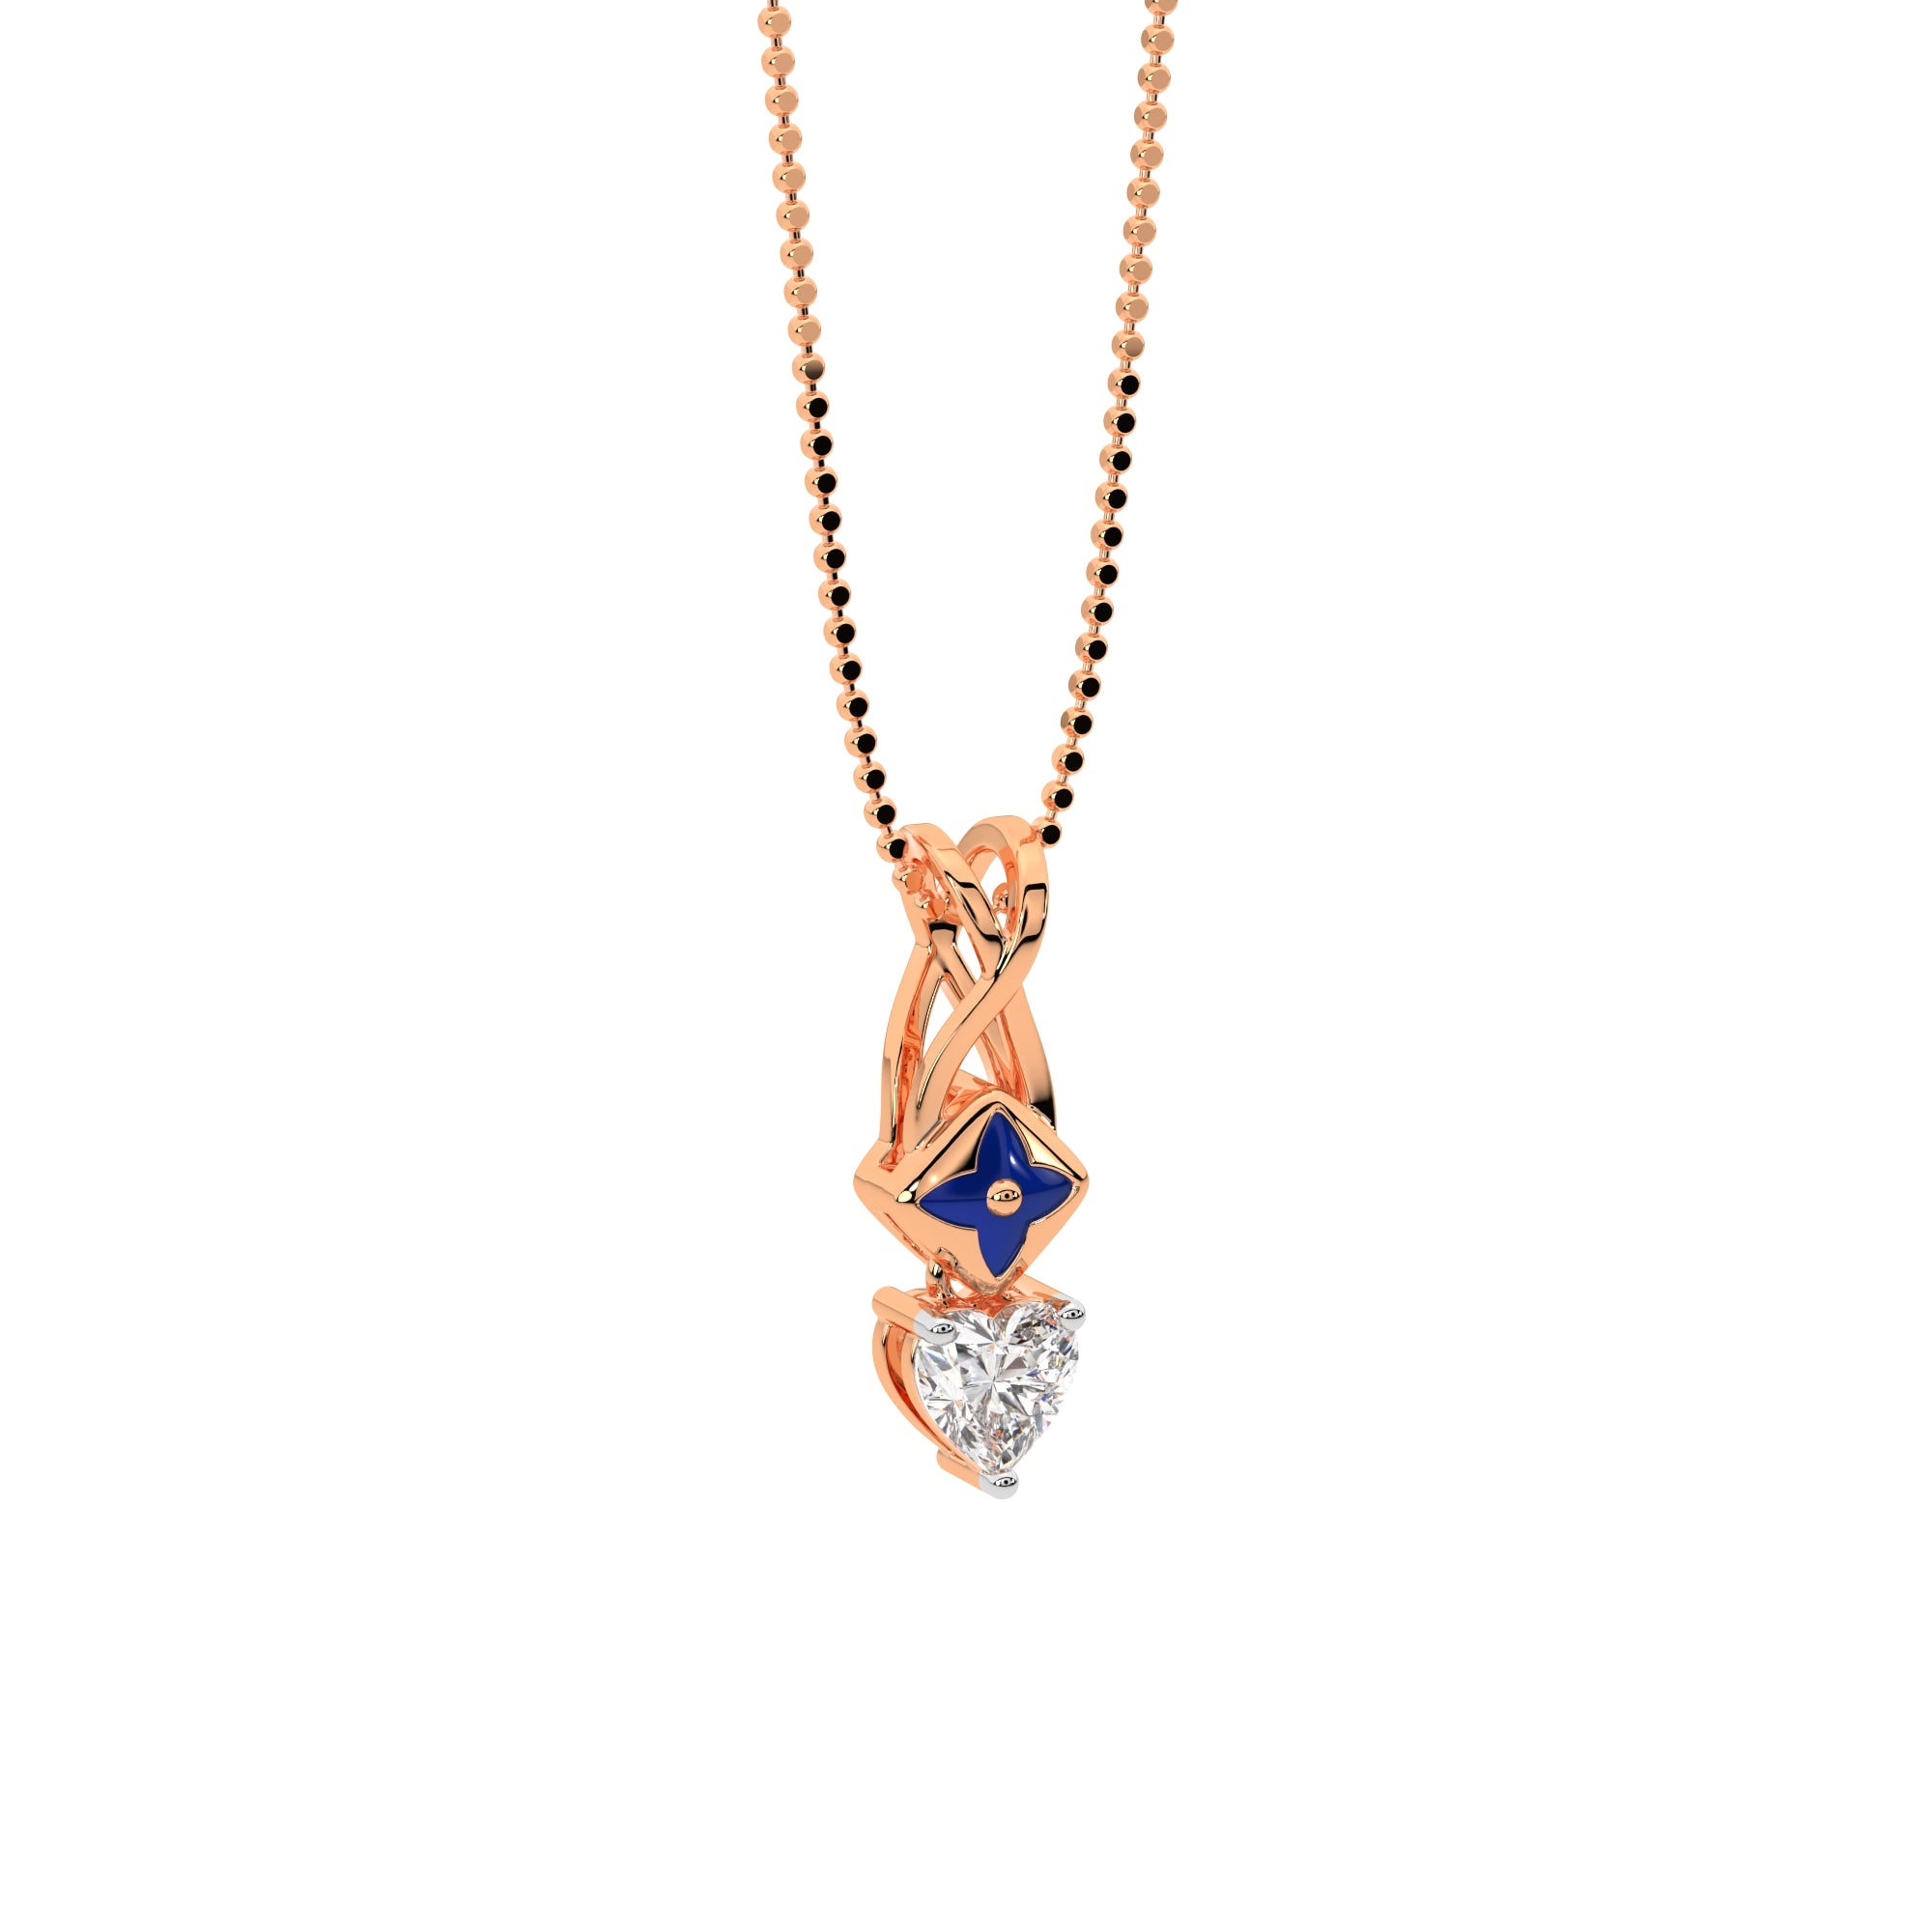 Starlit Heart Diamond Pendant